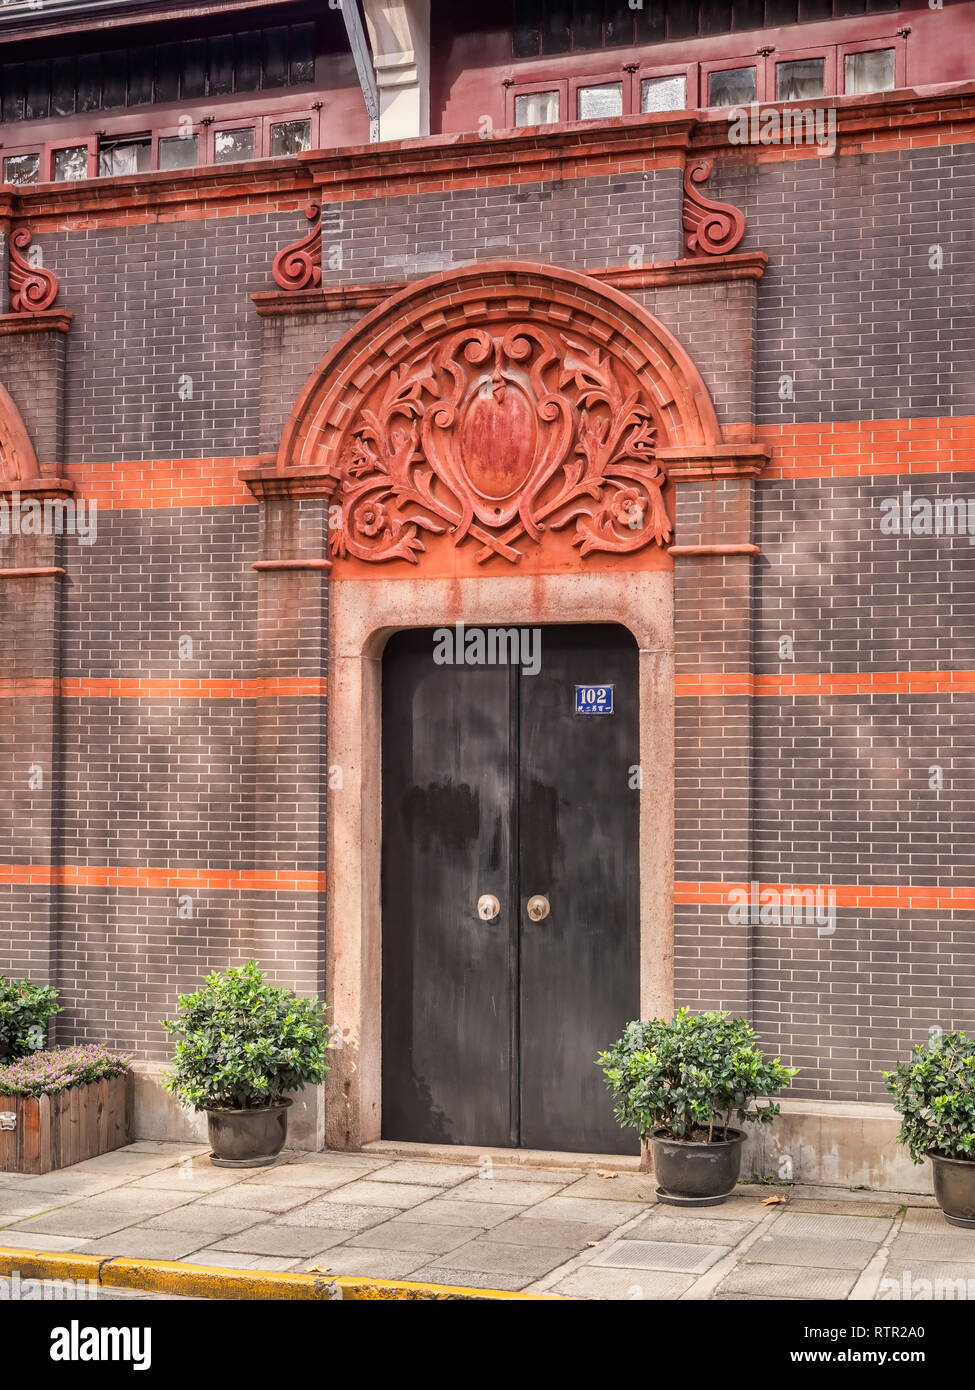 30 Novembre 2018 : Shanghai, Chine - typique de la porte , dans le quartier de Xintiandi Shanghai, montrant un mélange de chinois et d'influences européennes. Banque D'Images